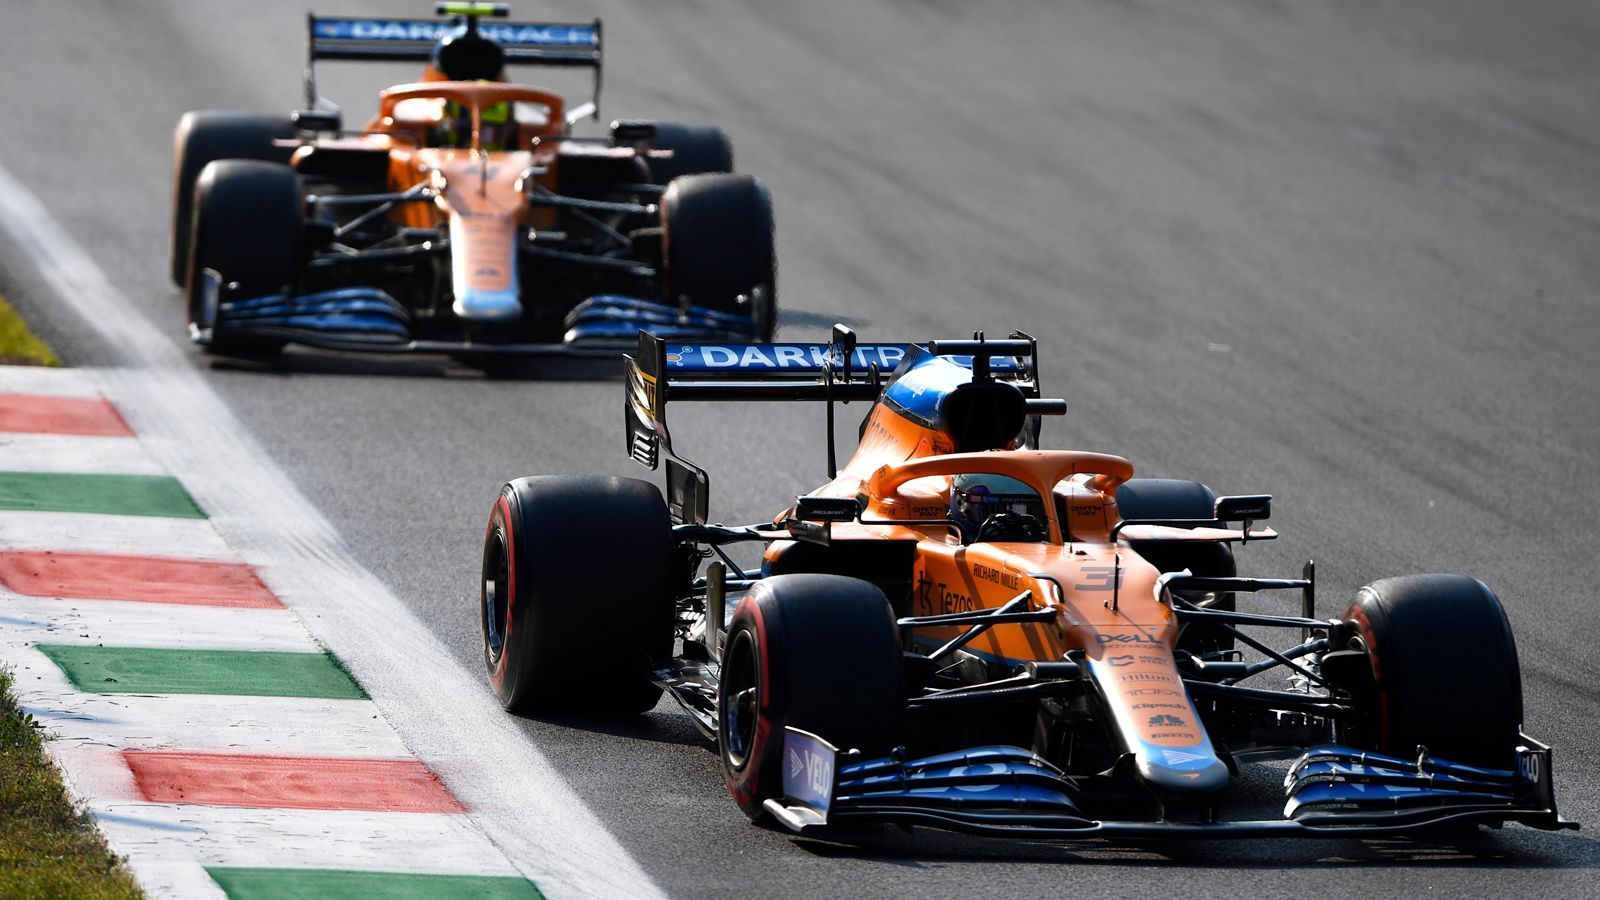 
                <strong>Gewinner: McLaren</strong><br>
                Ausgelassener Jubel bei dem Traditionsrennstall. Daniel Ricciardo hat McLaren den ersten Formel-1-Erfolg seit November 2012 beschert. Lando Norris komplettierte den Doppelerfolg, den ersten seit 2010. Ganz wichtig: Nach dem Rennwochenende in Monza ist McLaren Dritter in der Konstrukteurs-Wertung, Best of the Rest hinter Mercedes und Red Bull Racing also, aber noch vor Ferrari.
              